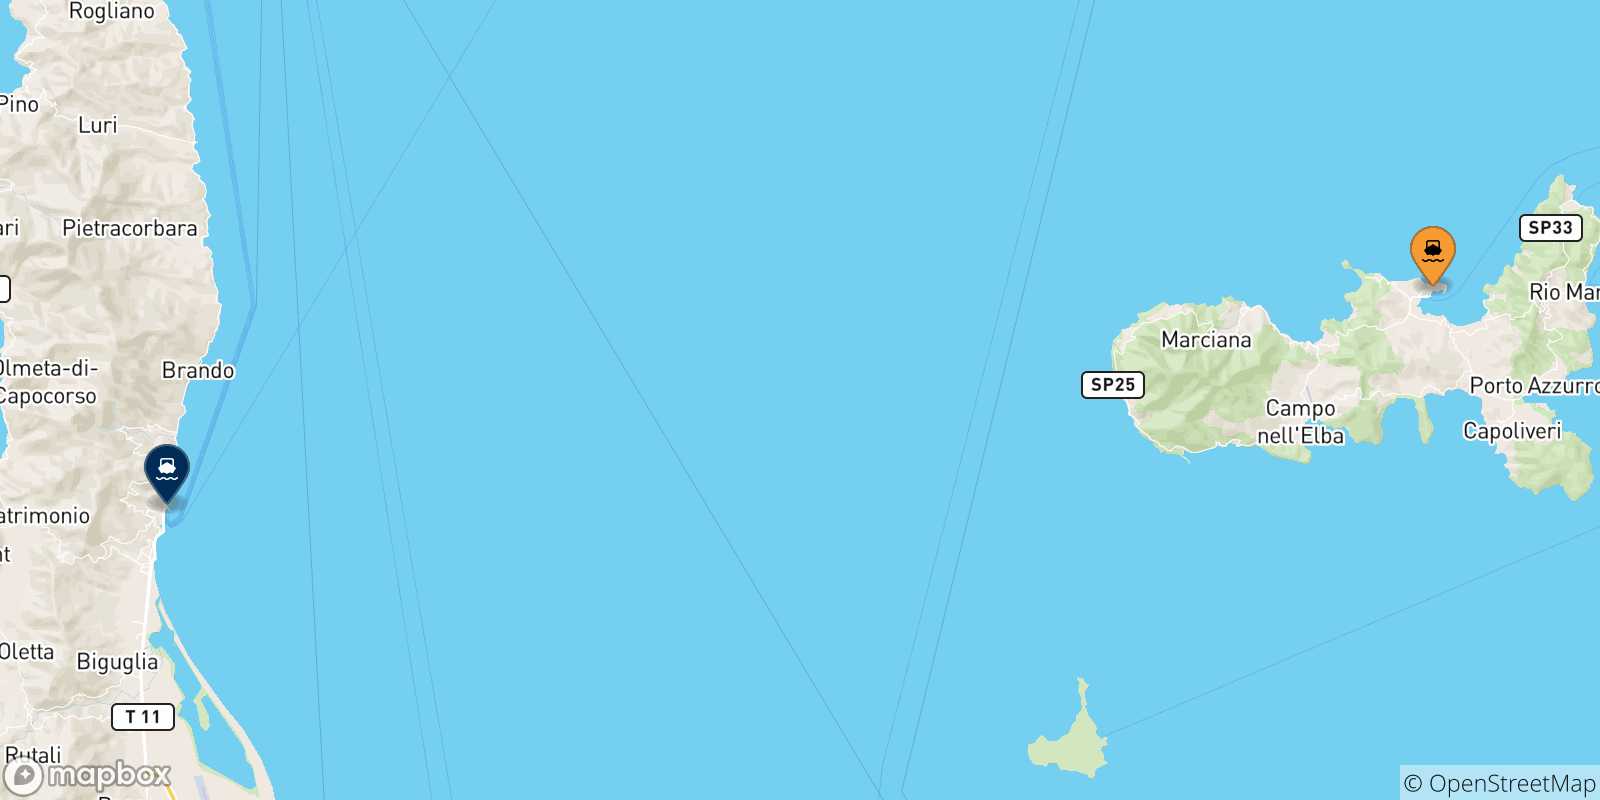 Mappa delle possibili rotte tra l'Isola D'elba e la Corsica